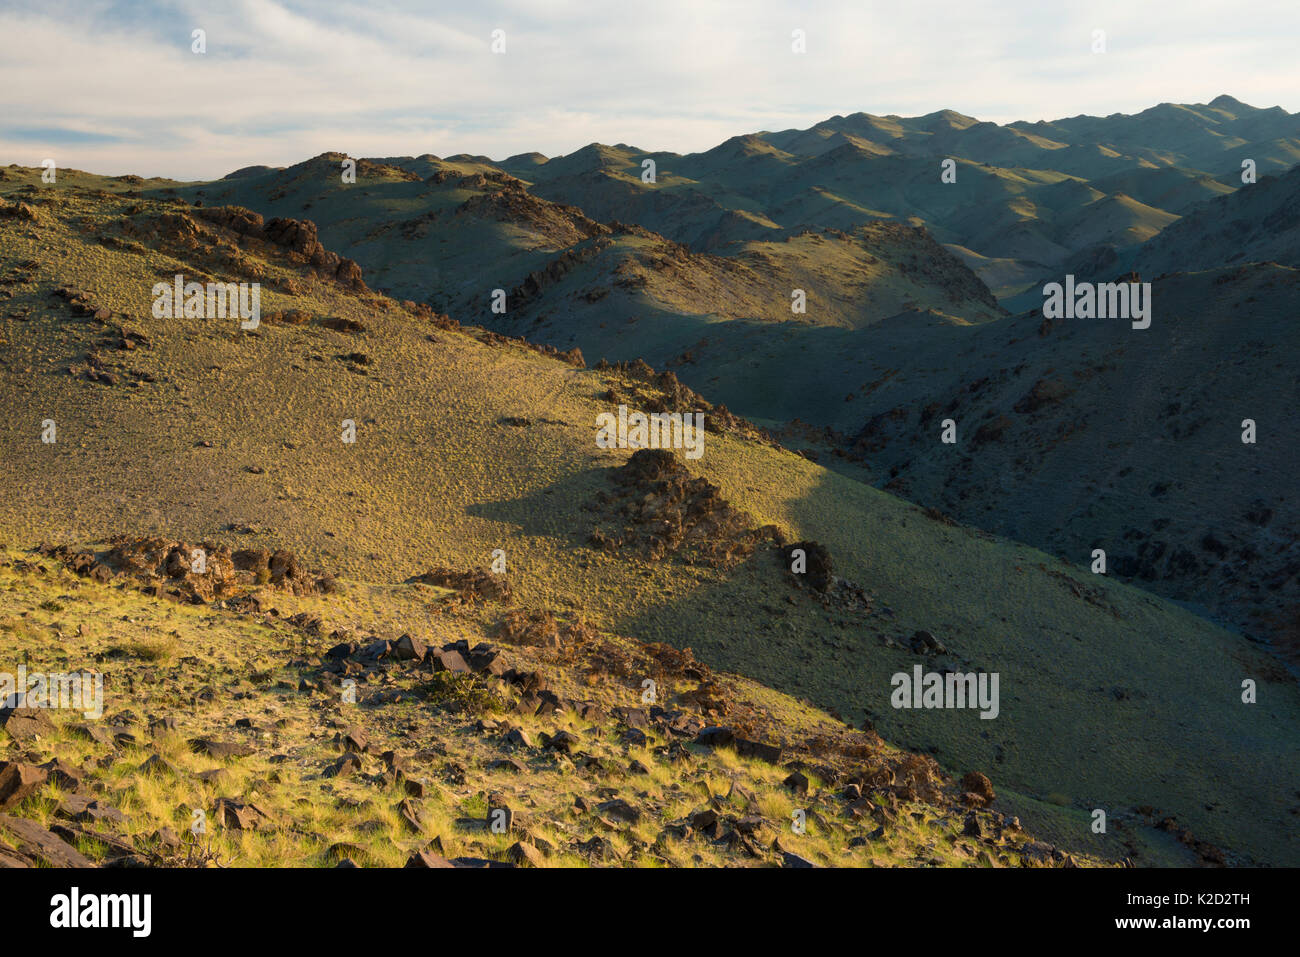 Khavtsgait,Montagne pétroglyphes de Gobi, Govi Gurvan Saikhan Umnugovi National Park, province du Sud, la Mongolie. Juin 2015. Banque D'Images